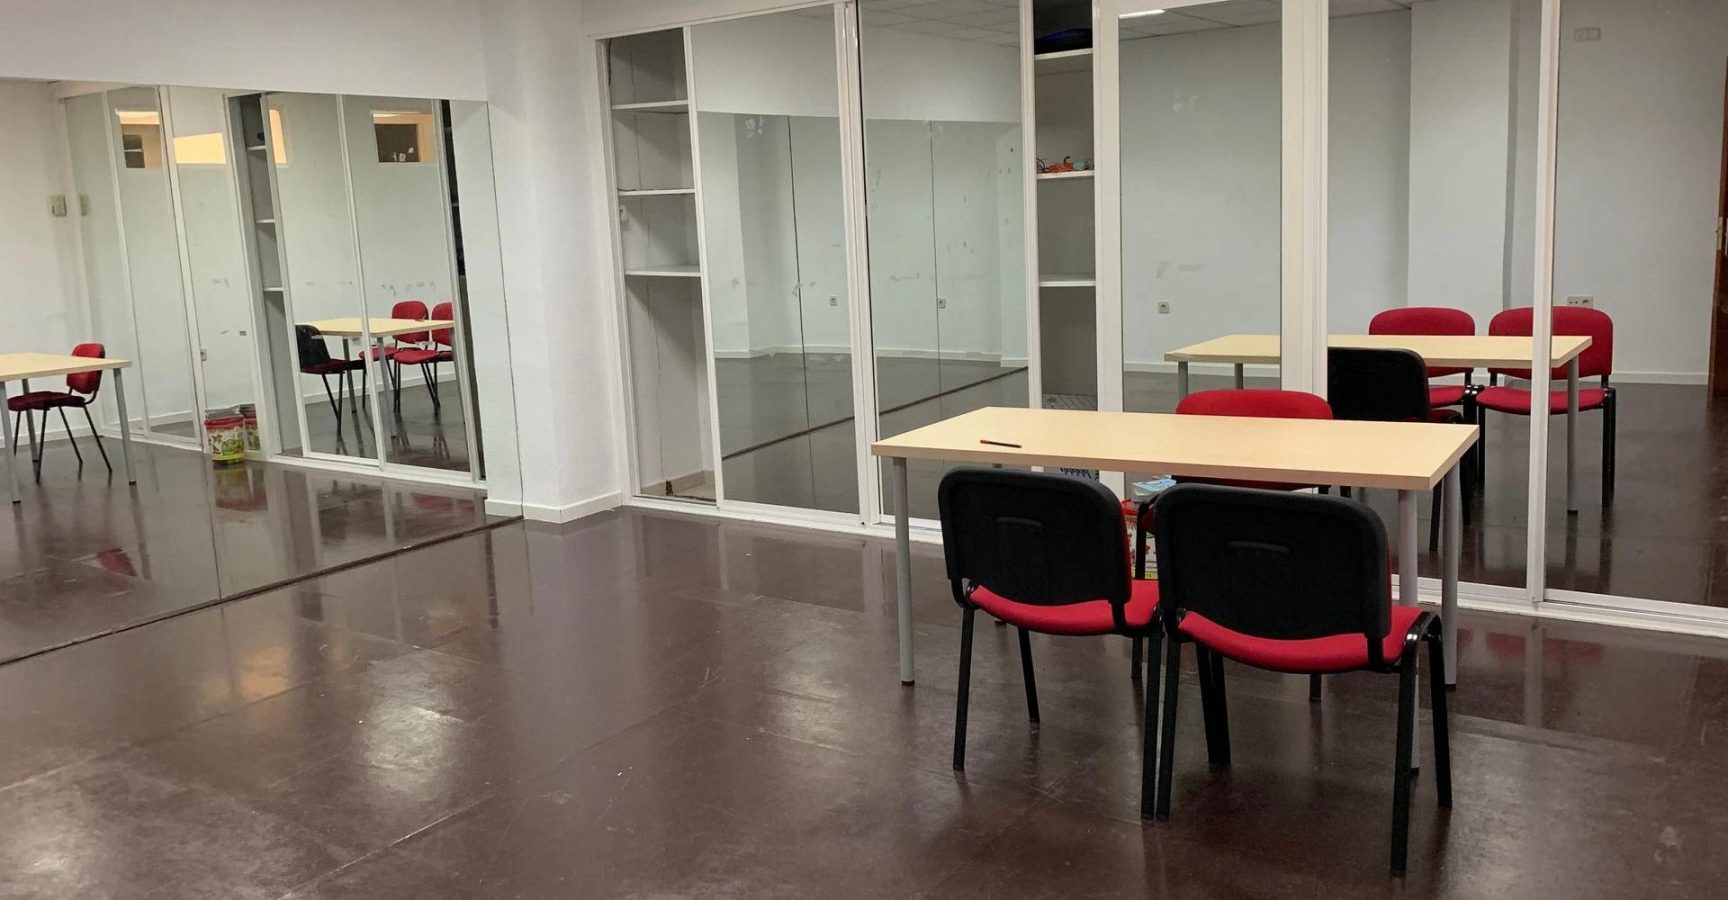 TalentMatrix ofrece aulas con espejos en nuestras modernas salas de reuniones en Coslada, el lugar perfecto para llevar a cabo tus reuniones y presentaciones en un ambiente profesional y dinámico.